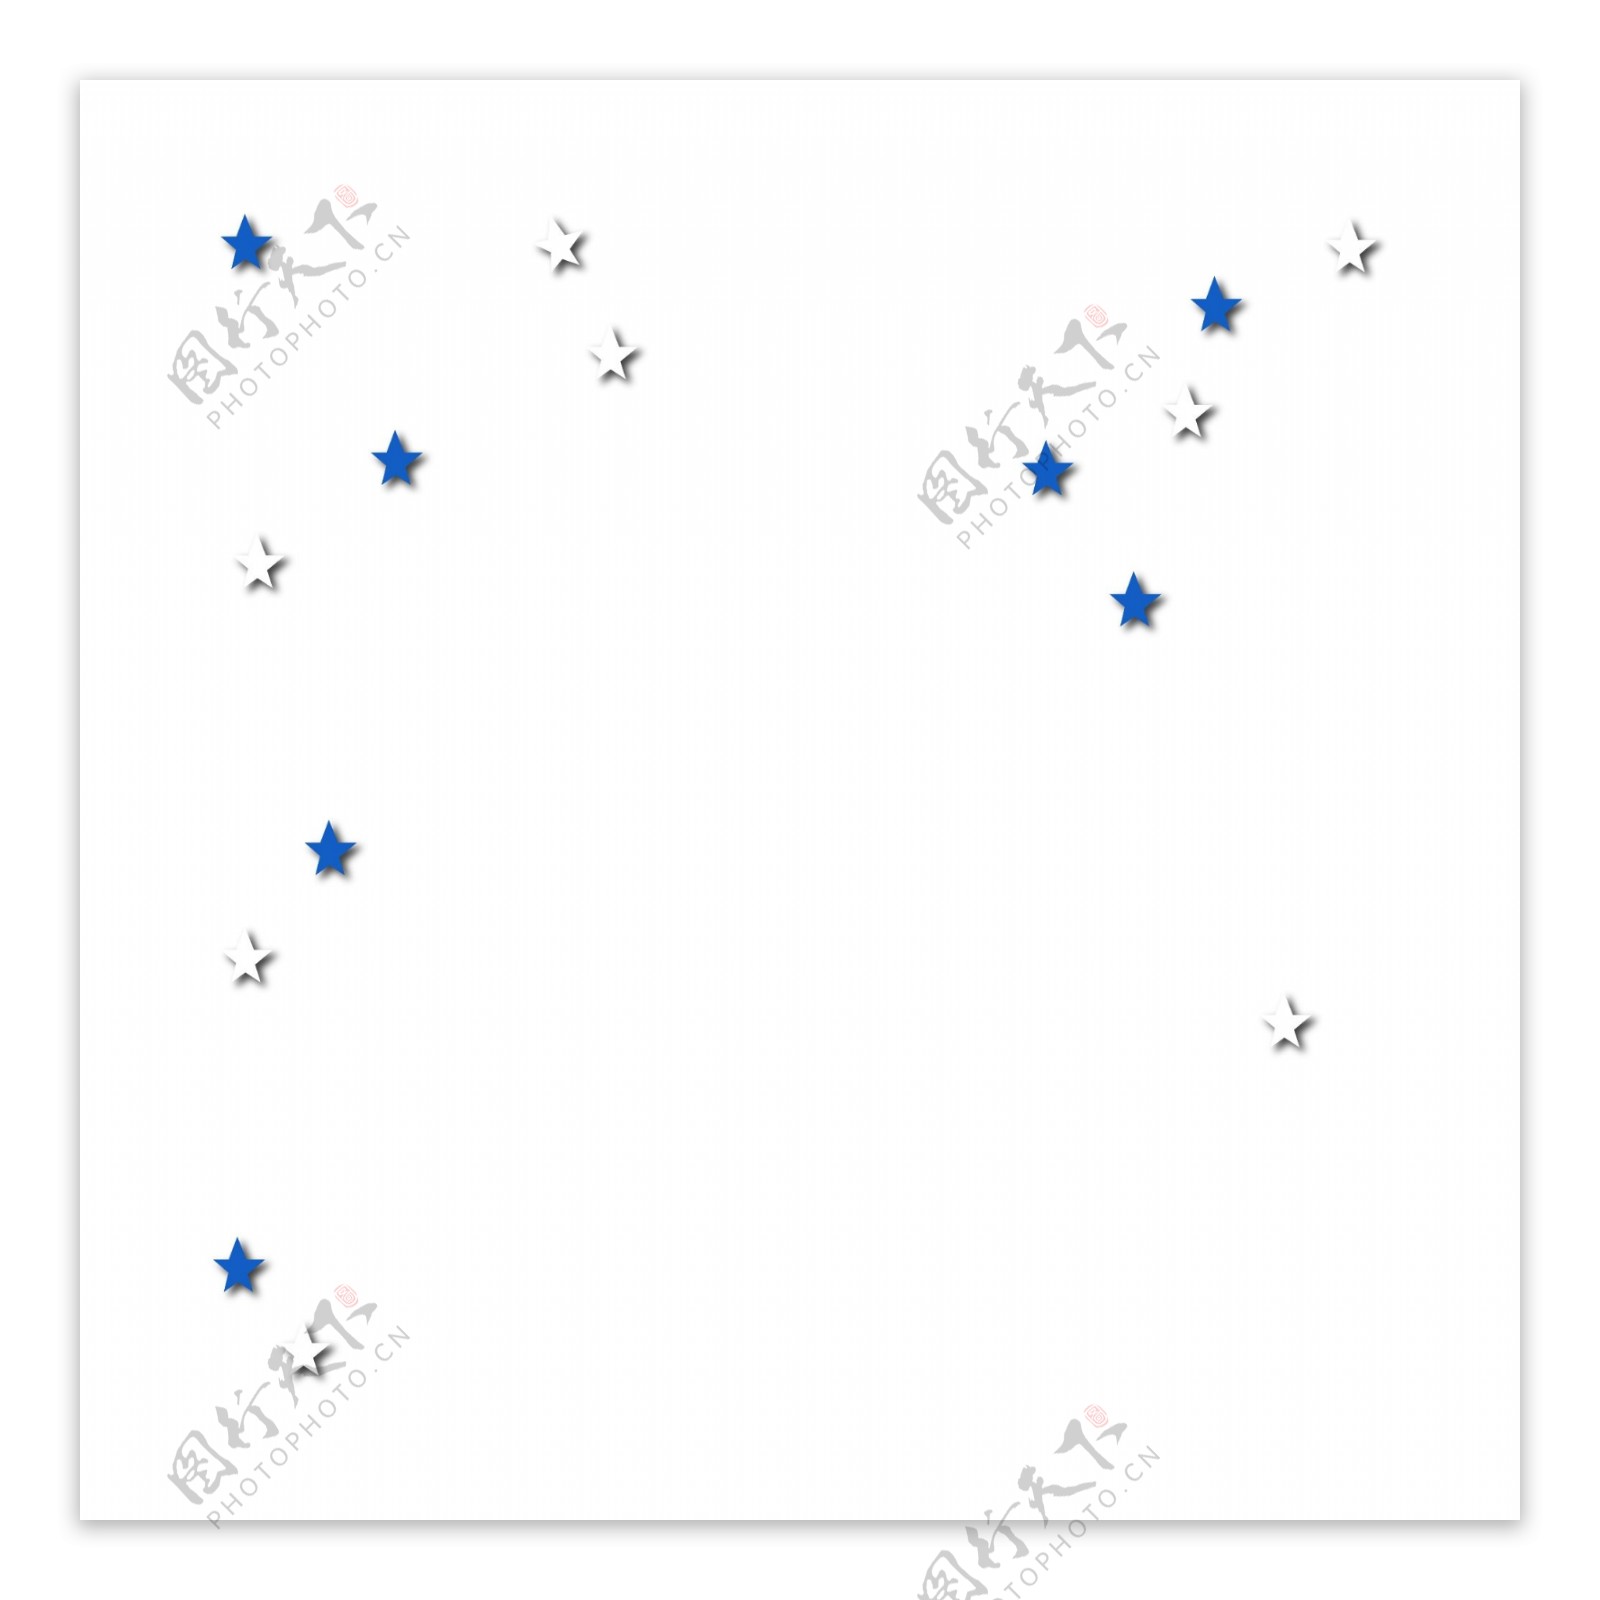 蓝色星星素材图片下载-素材编号08592895-素材天下图库